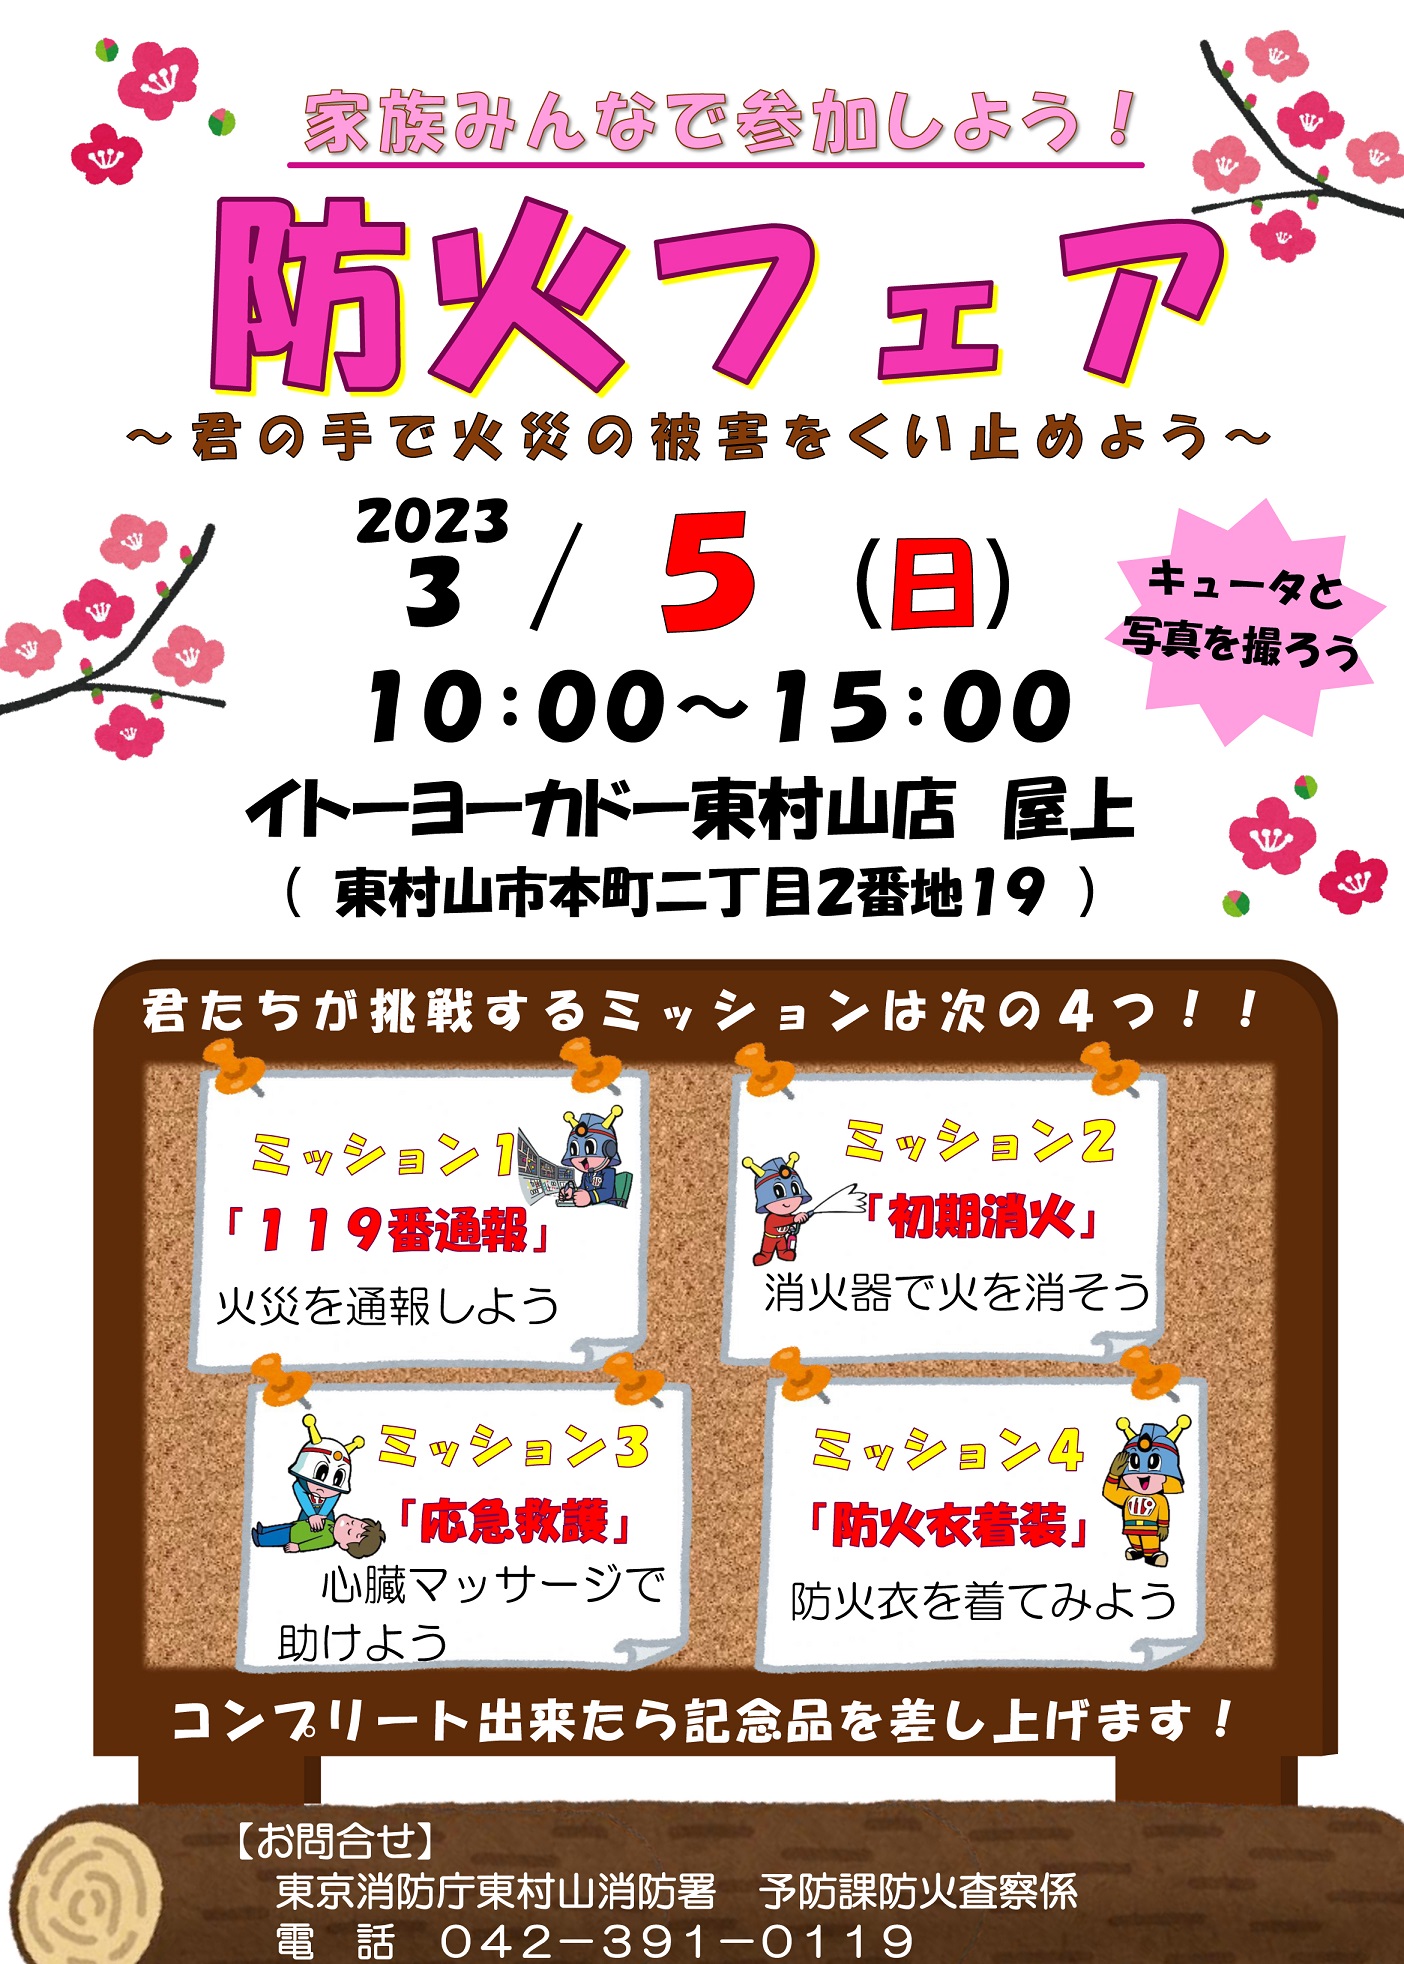 防火フェア2023 in イトーヨーカドー東村山店ポスター